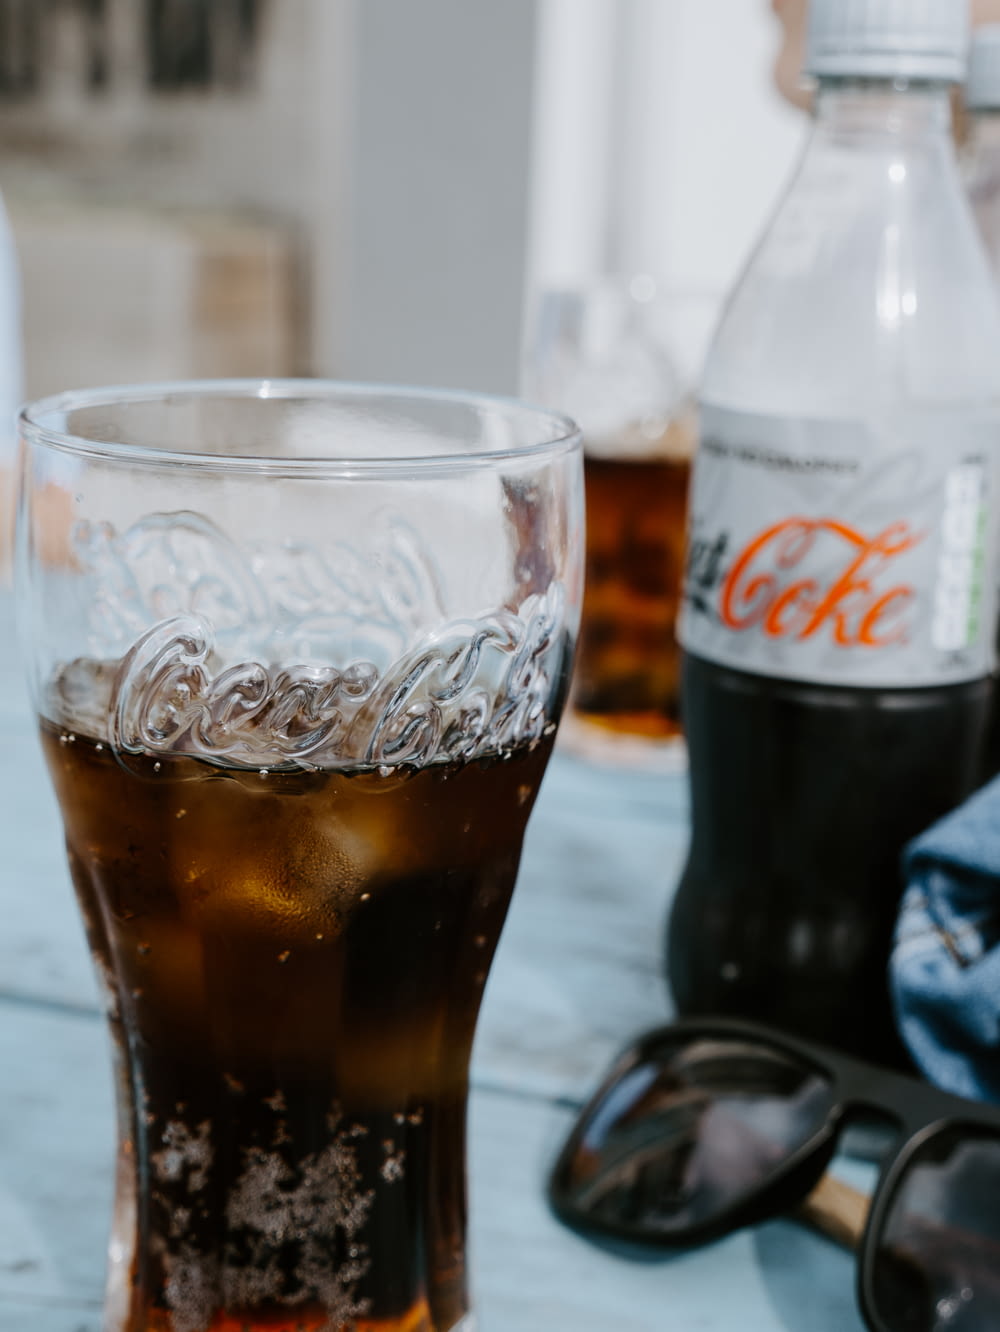 Botella de Coca Cola Light junto a un vaso transparente